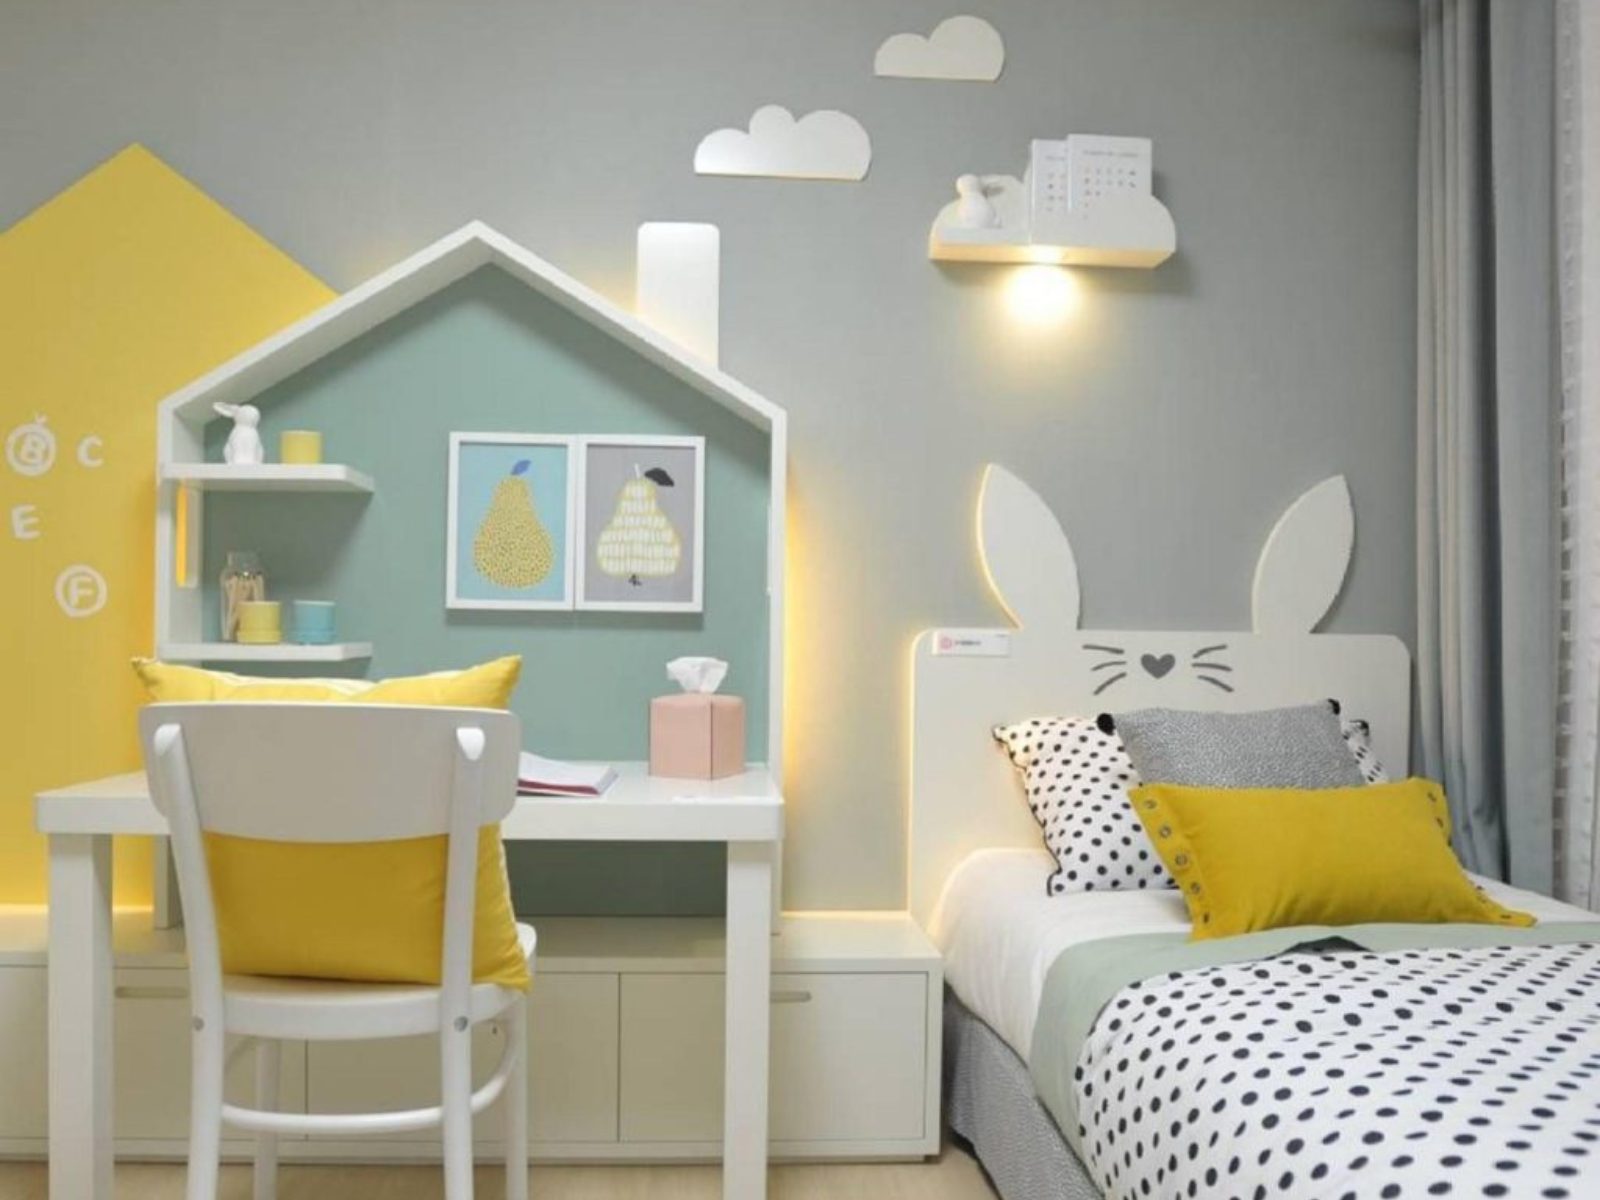 Phòng ngủ tone xám kết hợp mảng màu vàng và xanh ngọc cho bé gái năng động